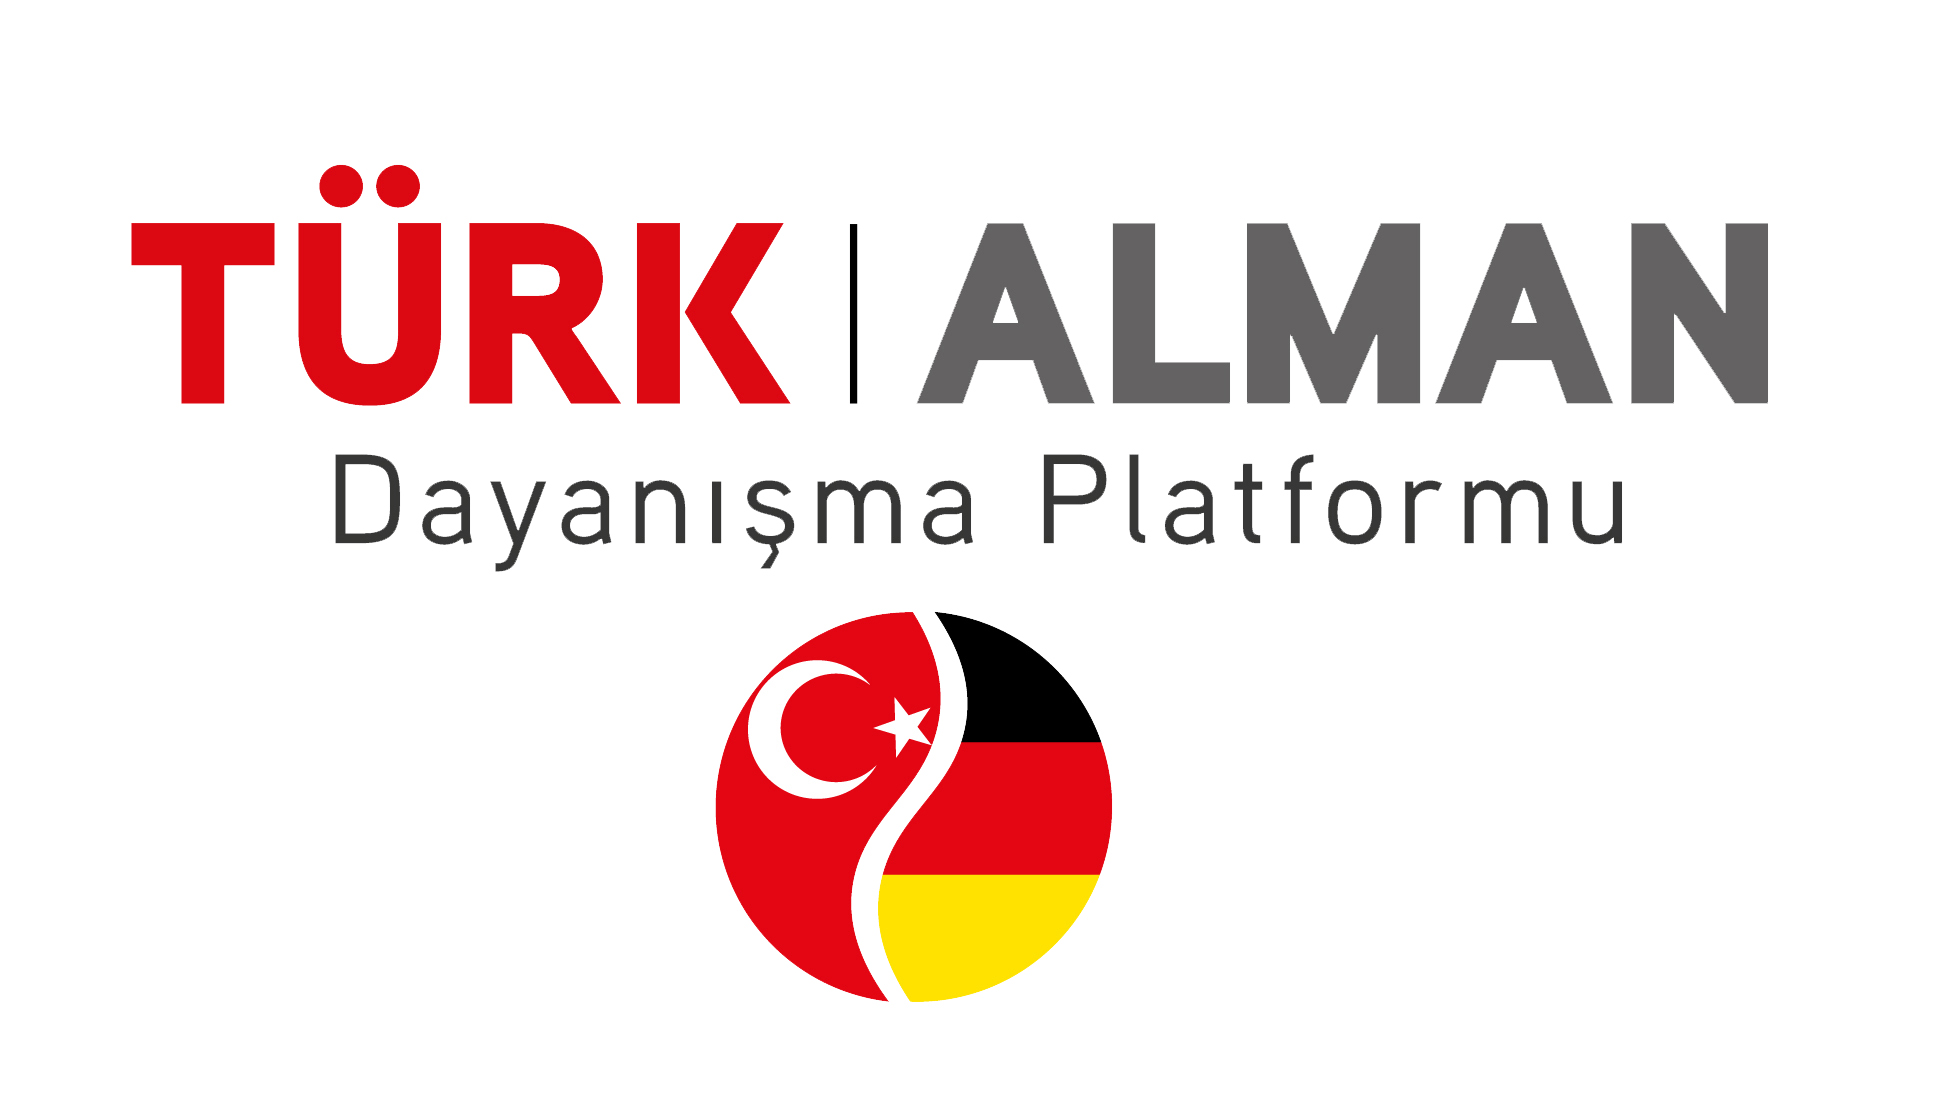 turk-alman-dayanisma-platformu-logo.jpg